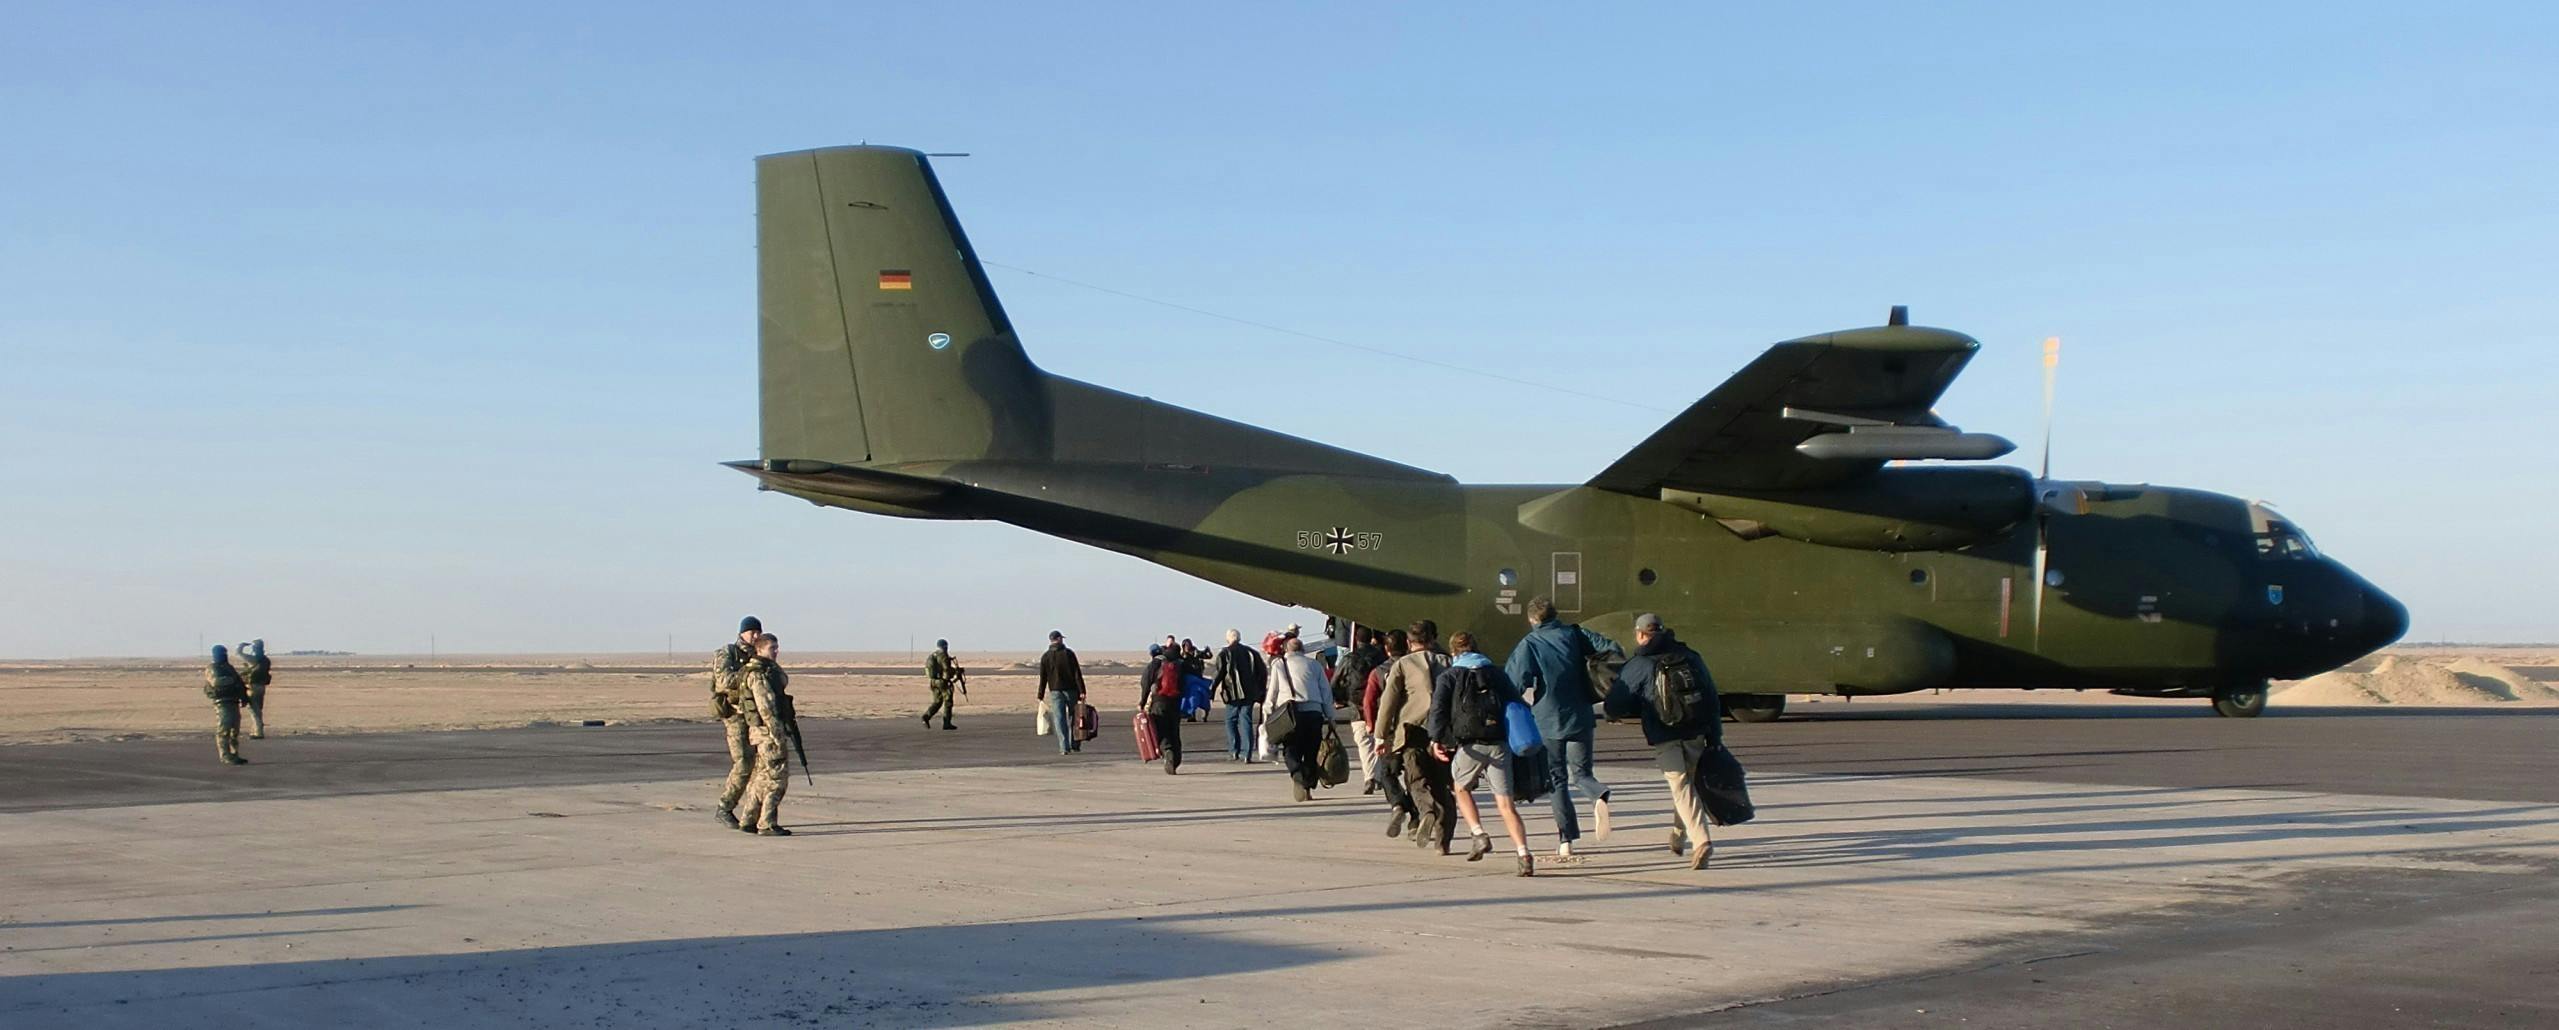 ﻿Bewaffnete Dienstreise: Mit Maschinengewehren nach Libyen 